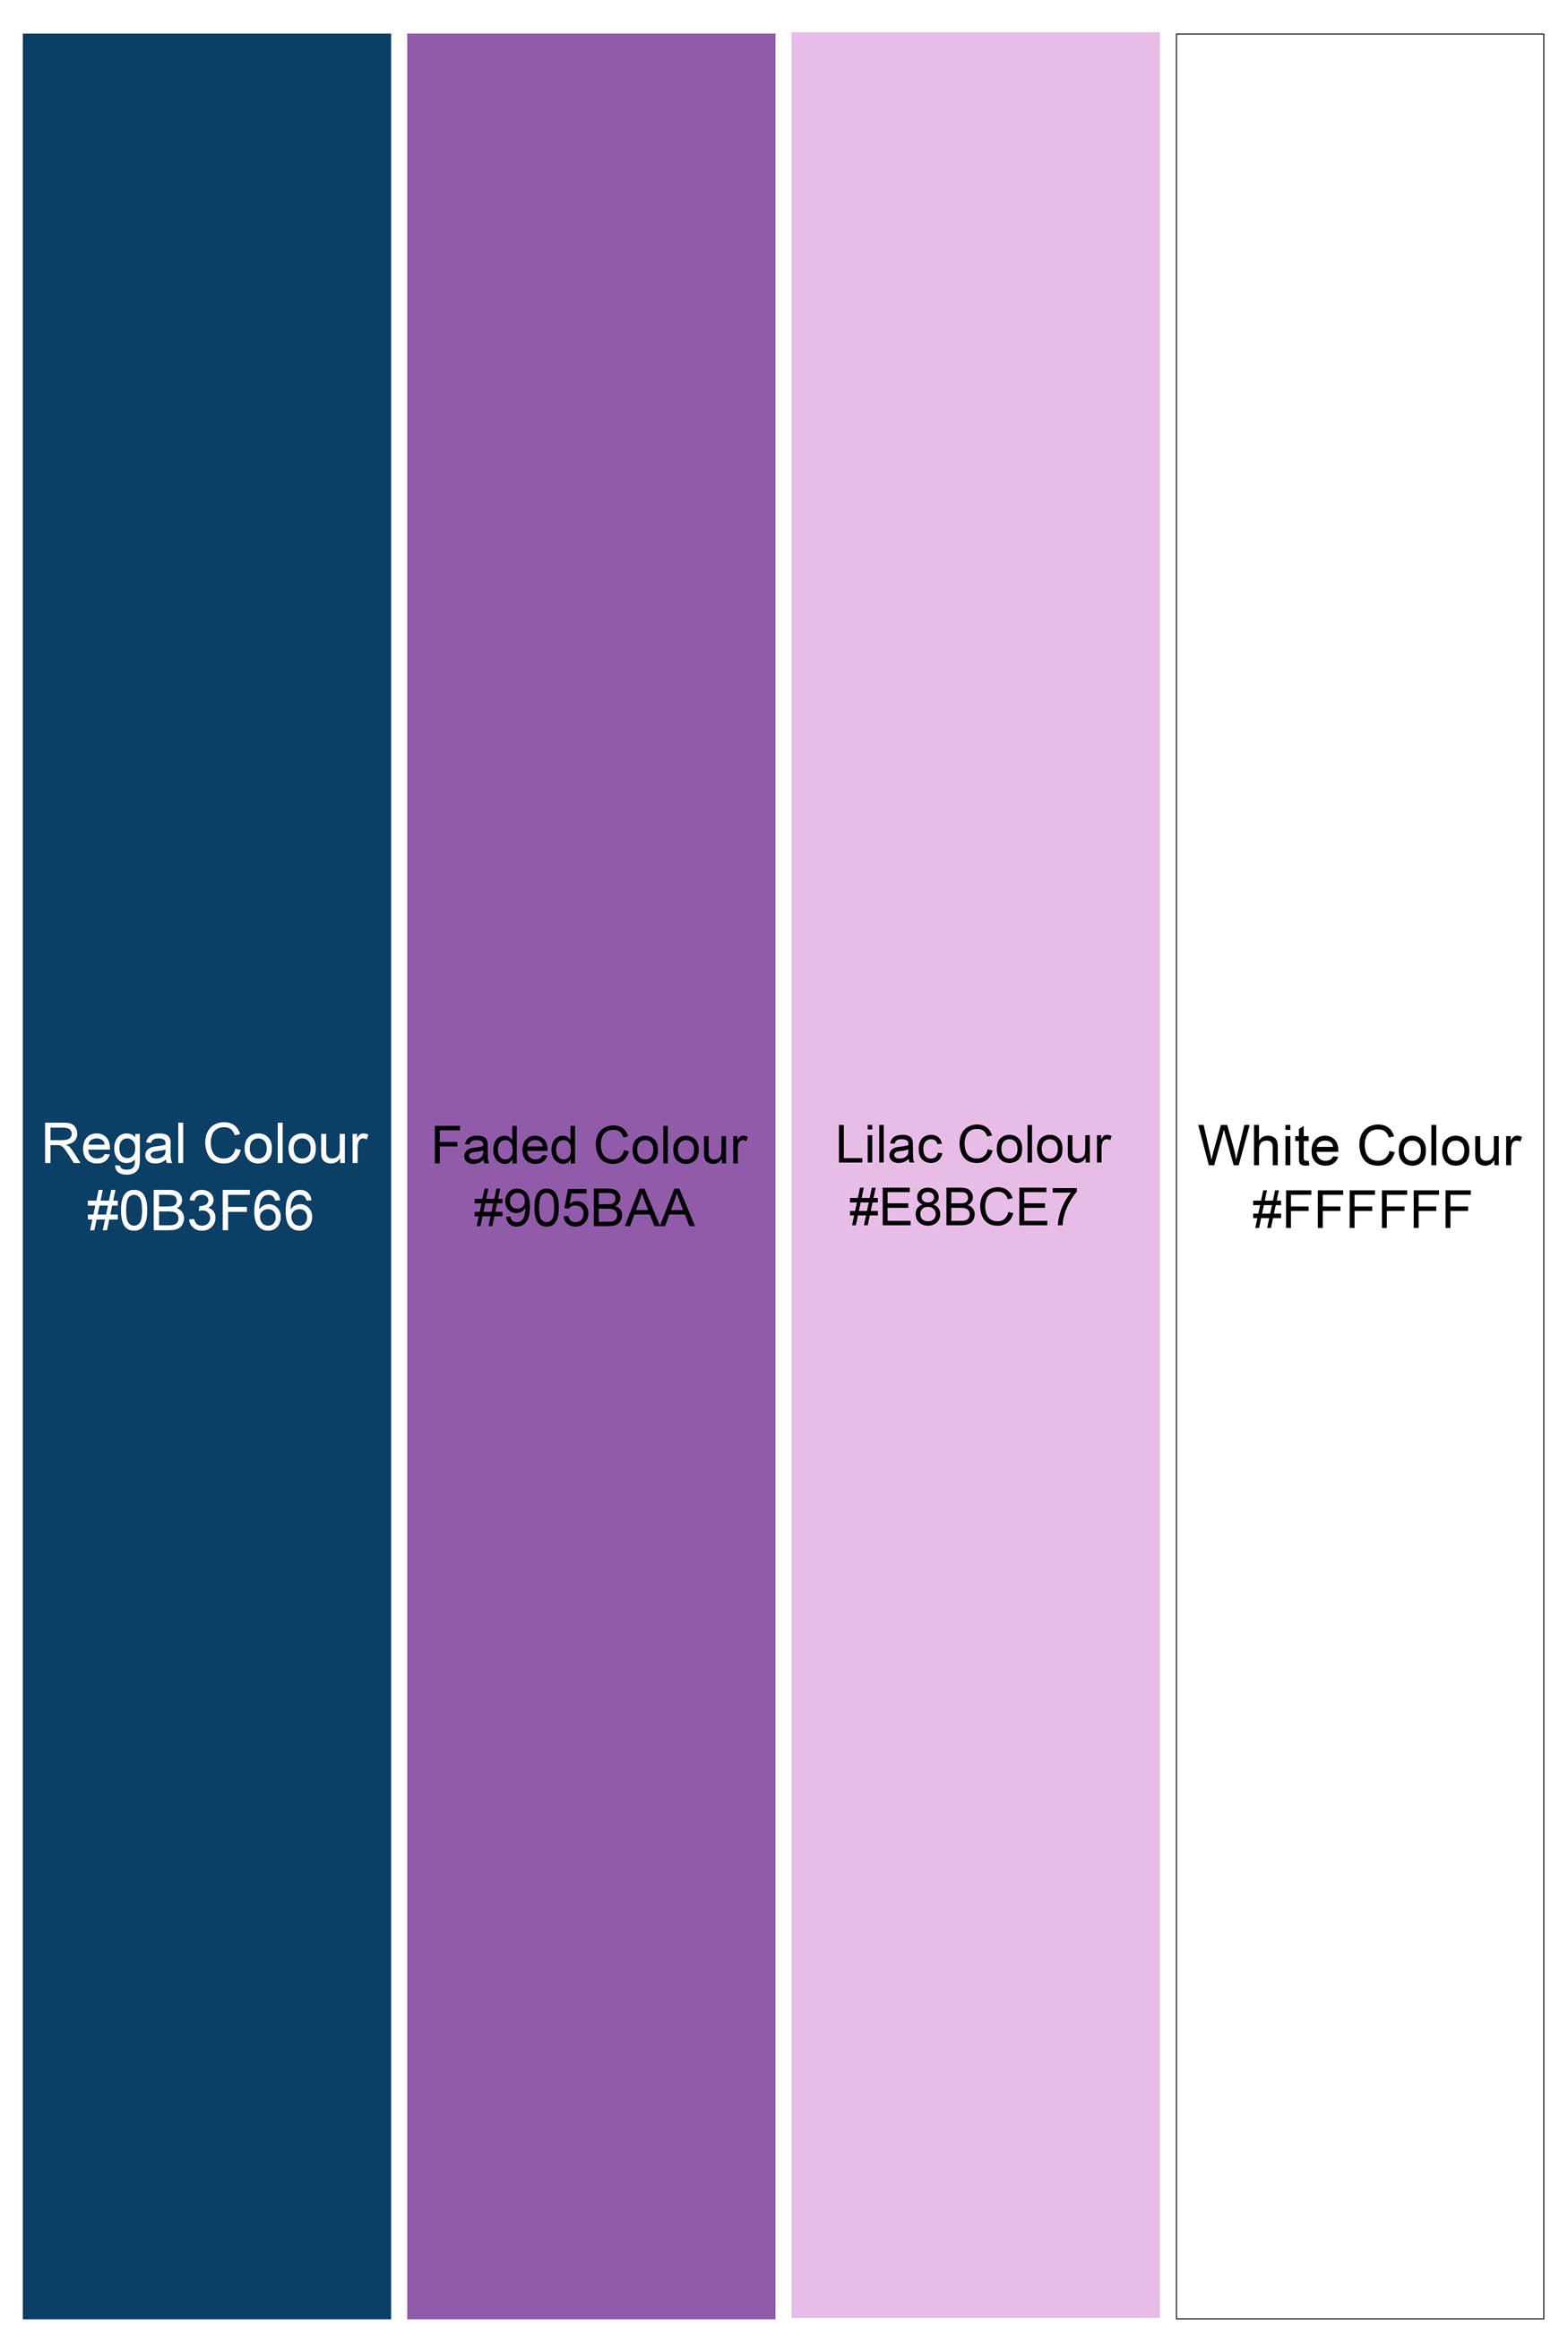  Regal Blue and Lilac Lavender Multicolour Tile Printed Subtle Sheen Super Soft Premium Cotton Designer Shirt 12186-CC-BLK-SS-38, 12186-CC-BLK-SS-39, 12186-CC-BLK-SS-40, 12186-CC-BLK-SS-42, 12186-CC-BLK-SS-44, 12186-CC-BLK-SS-46, 12186-CC-BLK-SS-48, 12186-CC-BLK-SS-50, 12186-CC-BLK-SS-52